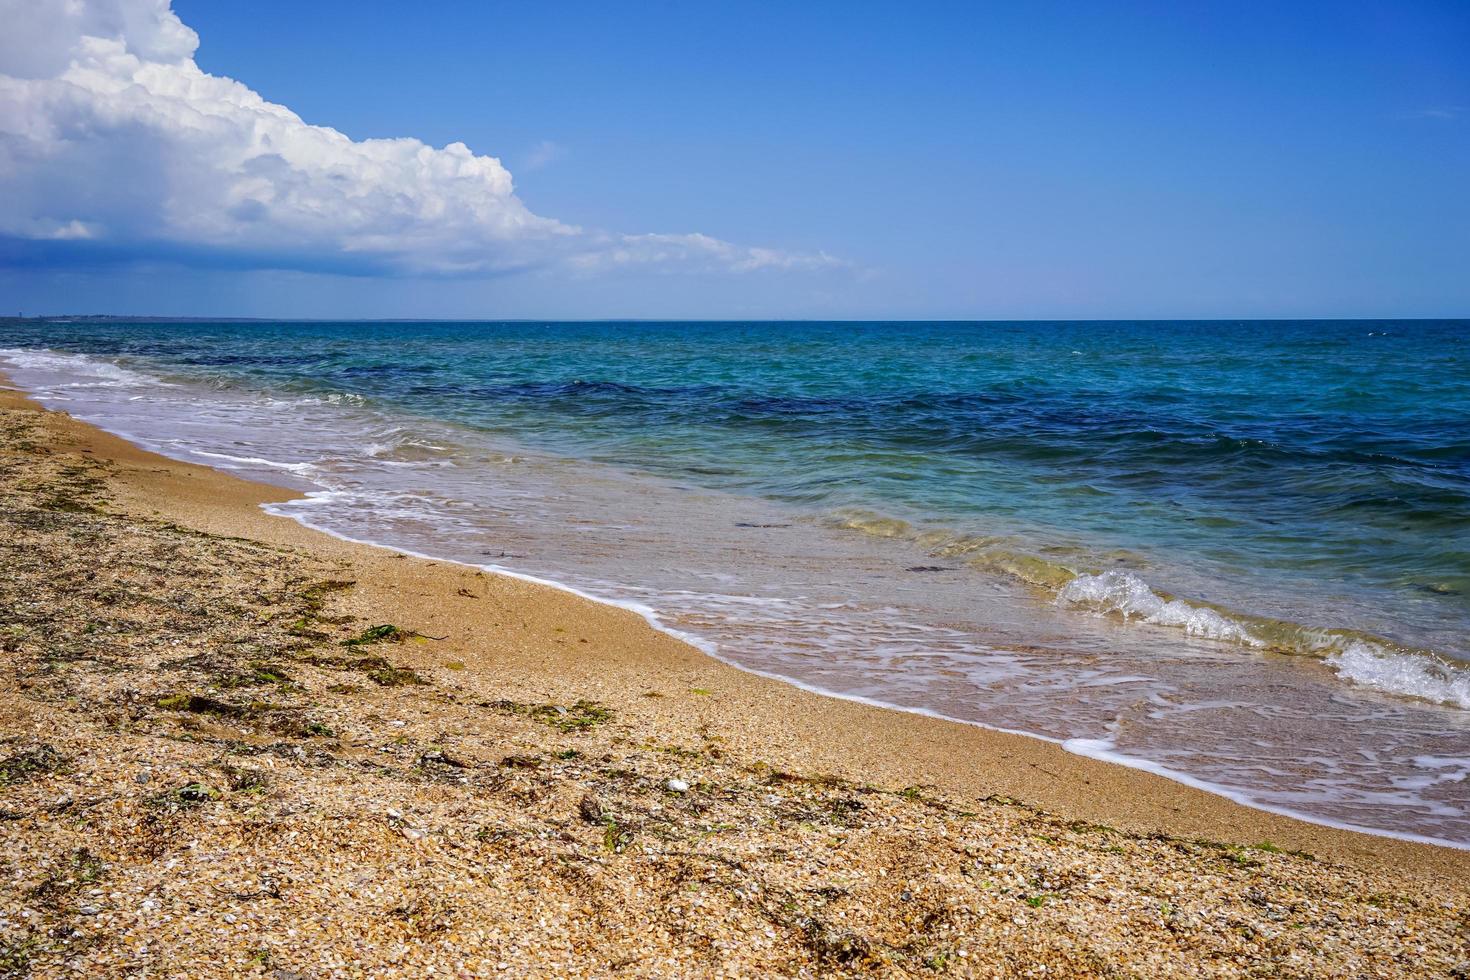 Sand- und Muschelstrand des Meeres in der Krim auf dem Hintergrund des hellen blauen Meeres und des klaren Himmels foto